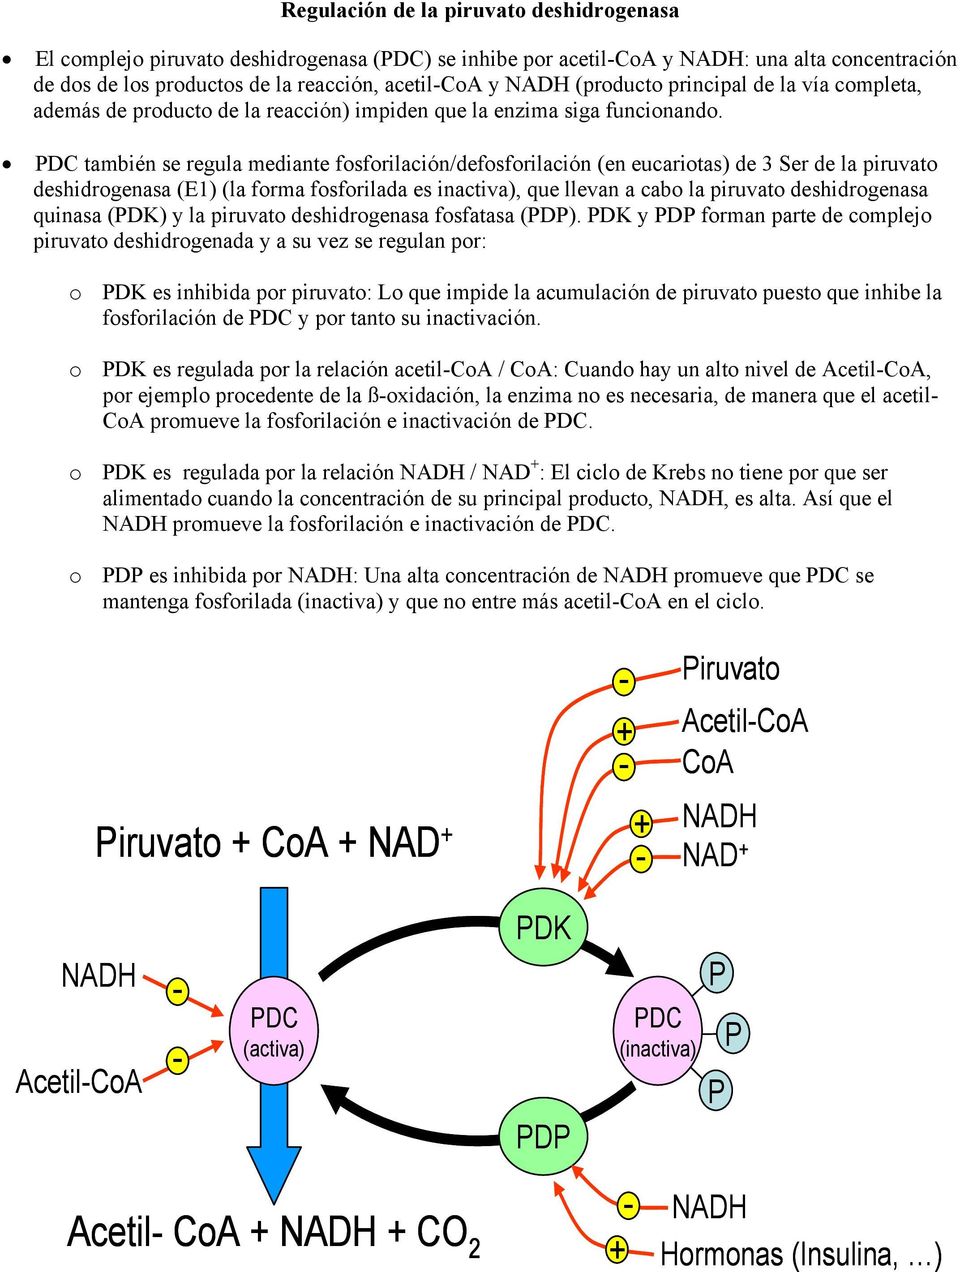 DC también se regula mediante fosforilación/defosforilación (en eucariotas) de 3 Ser de la piruvato deshidrogenasa (E1) (la forma fosforilada es inactiva), que llevan a cabo la piruvato